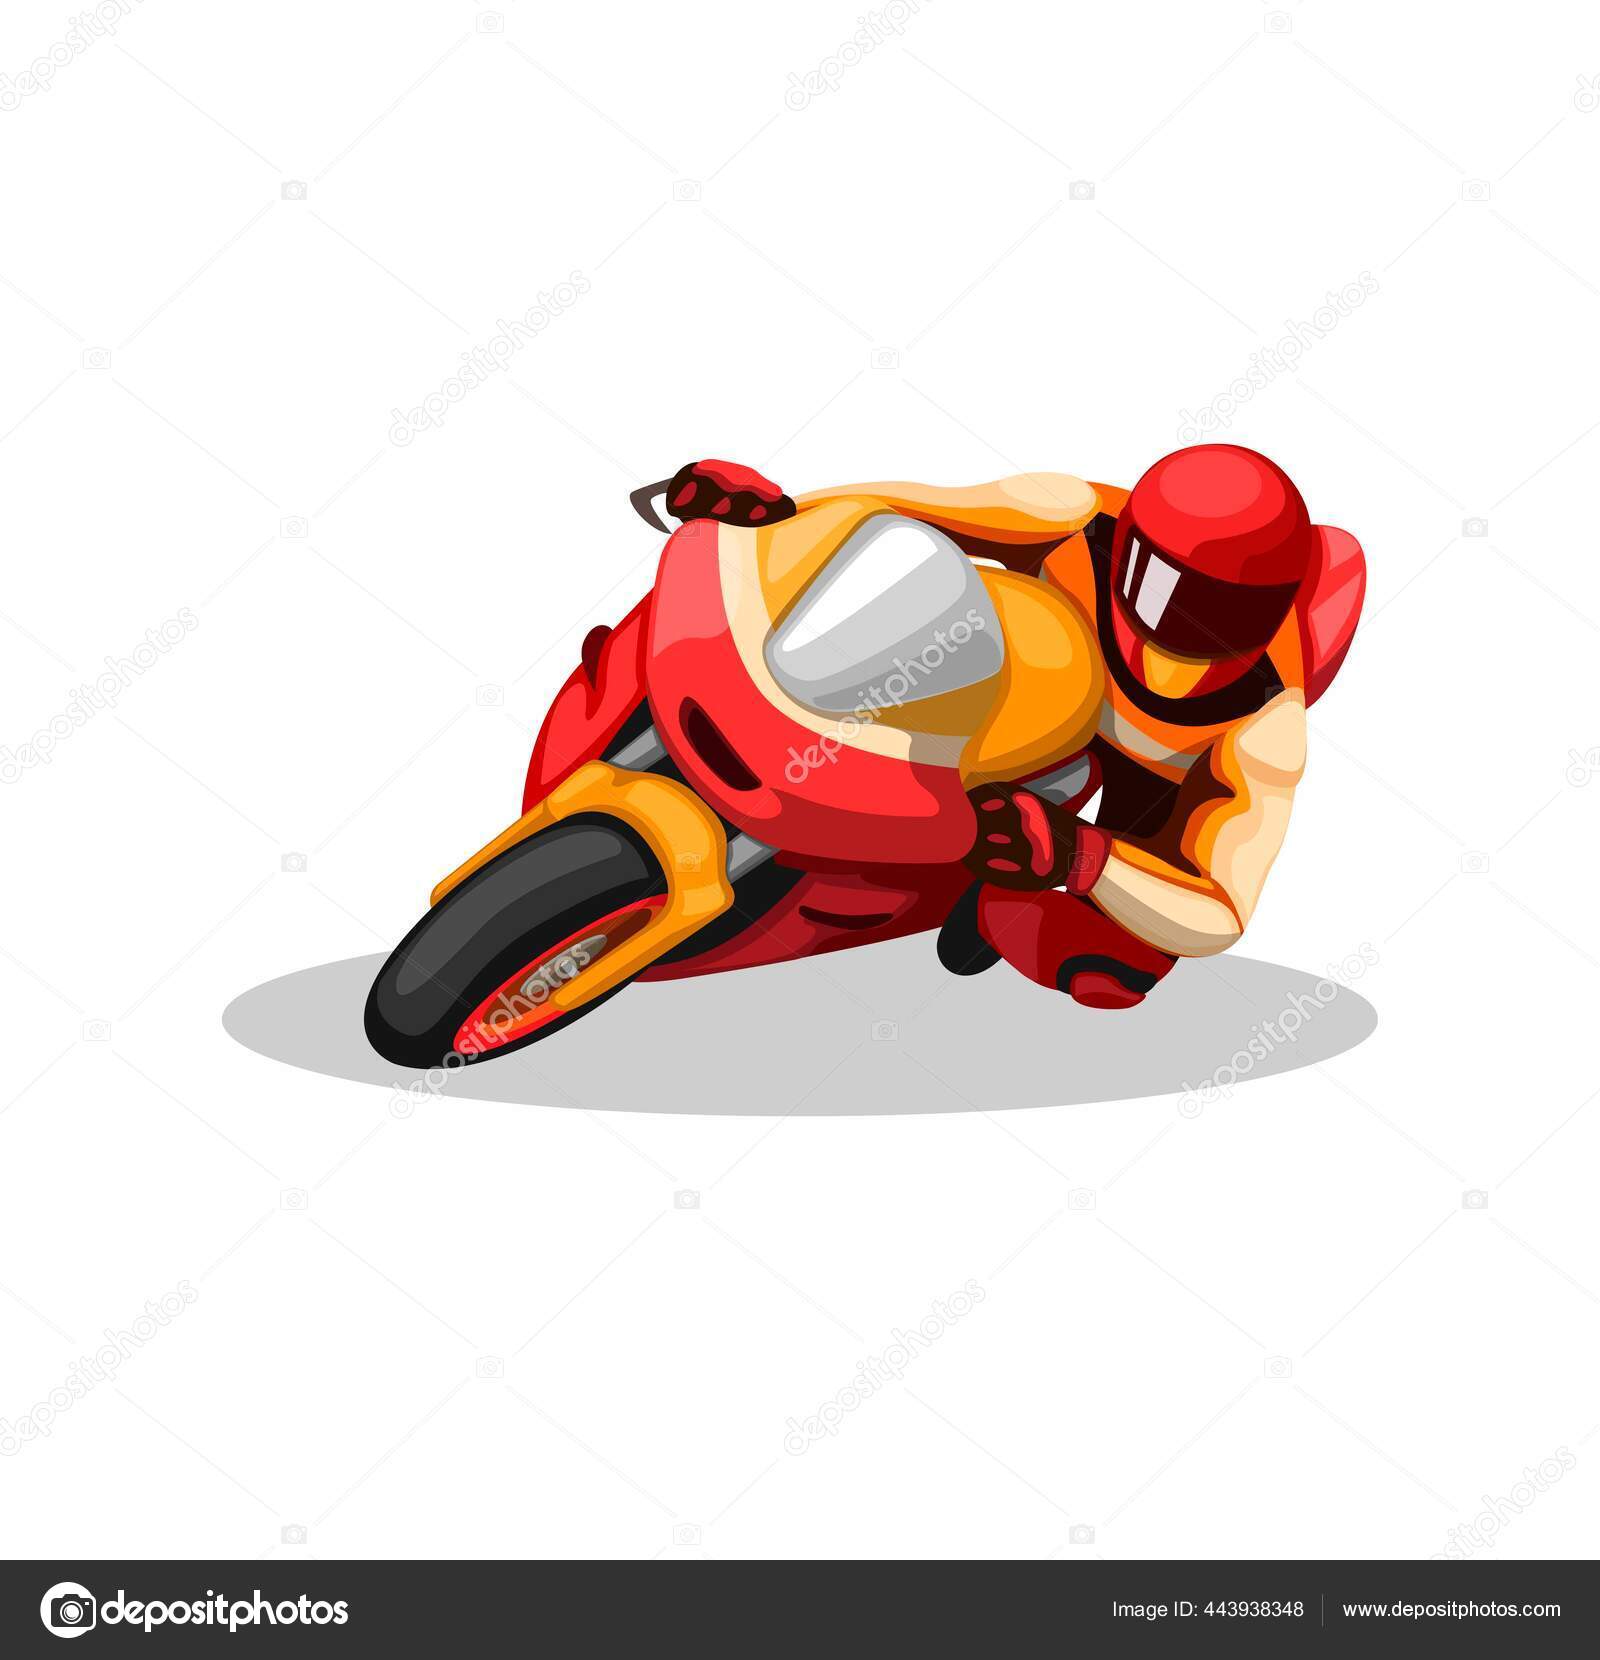 Desenho de coleção de corrida de moto